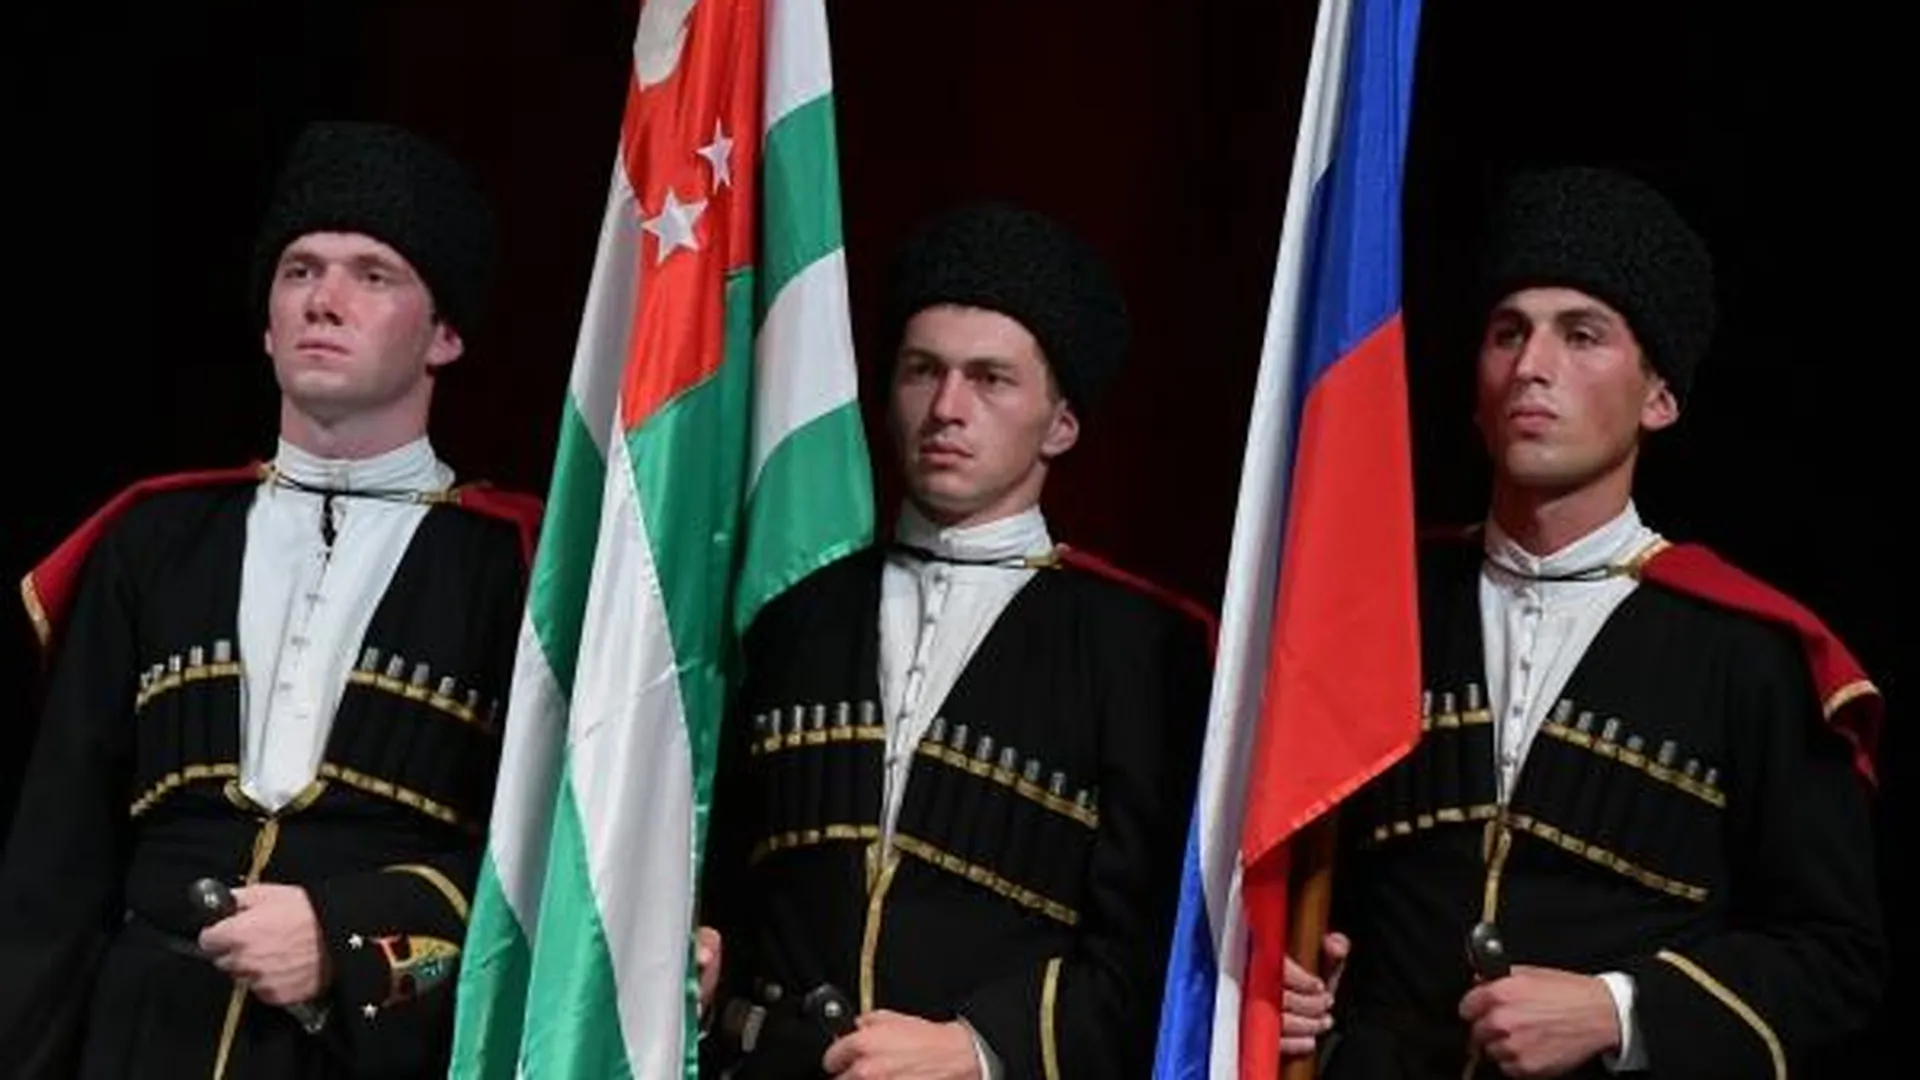 Почетный караул с государственными флагами Республики Абхазия и Российской Федерации